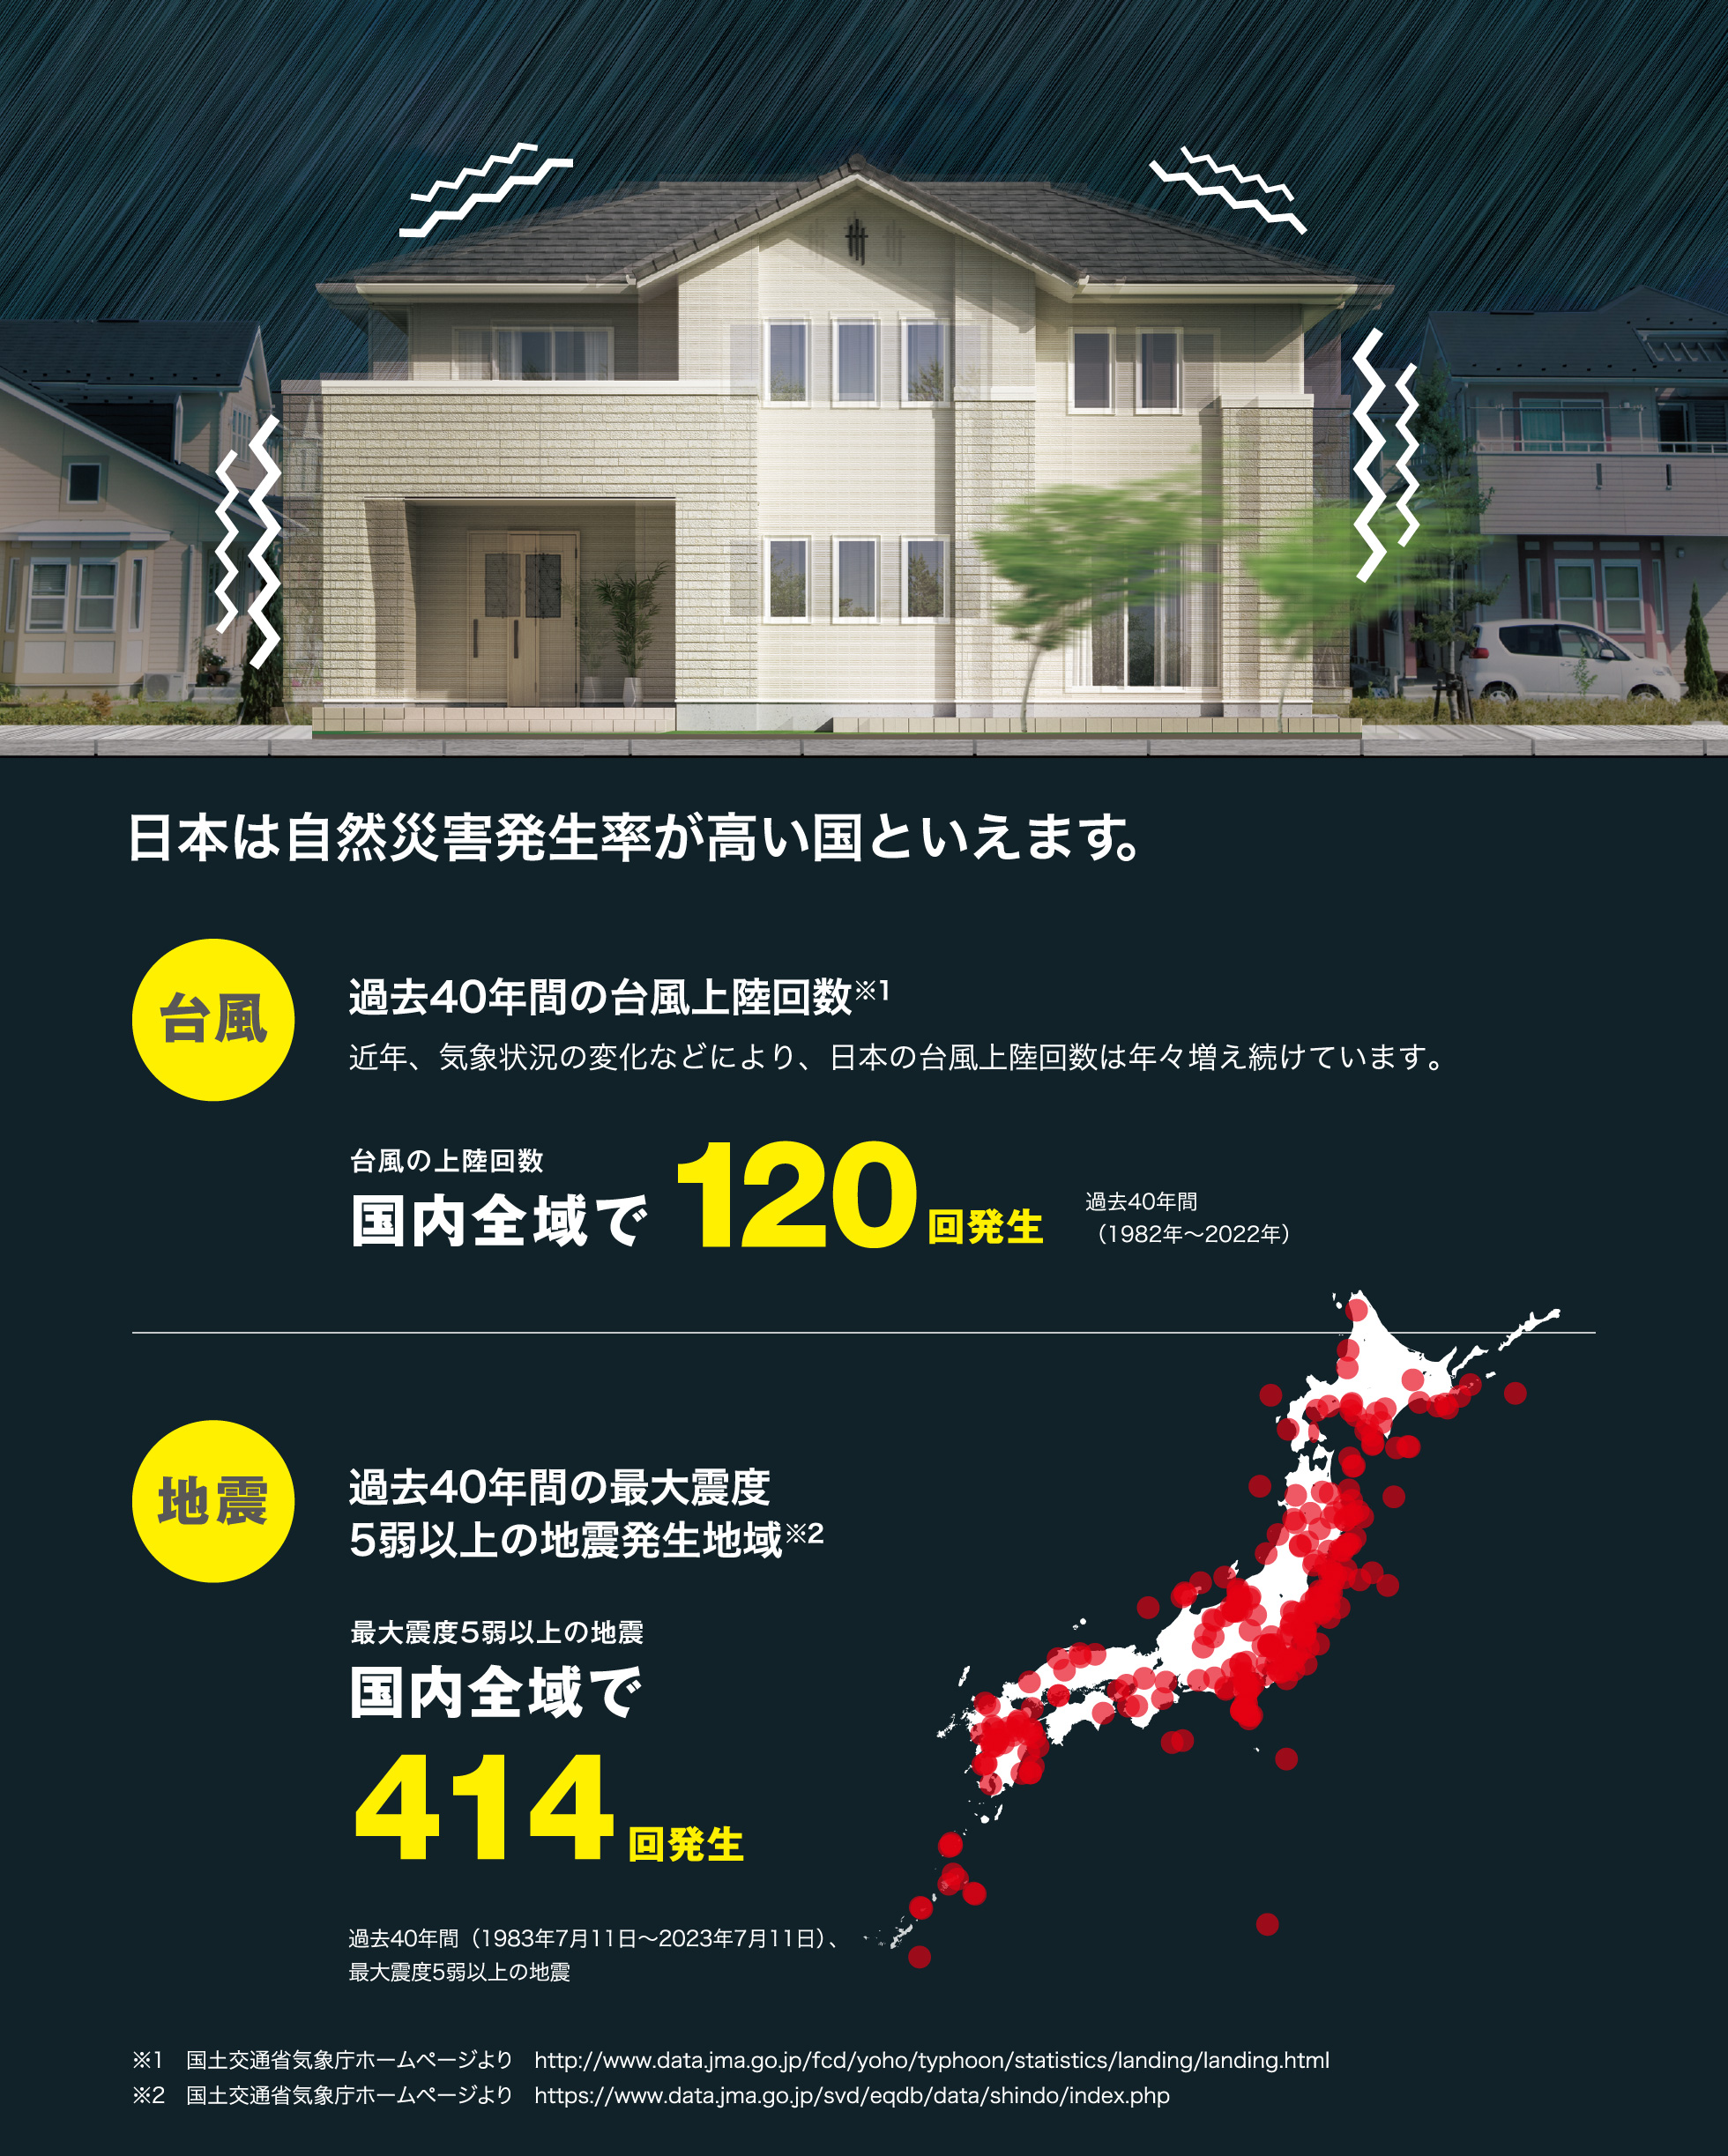 日本は自然災害発生率が高い国といえます。